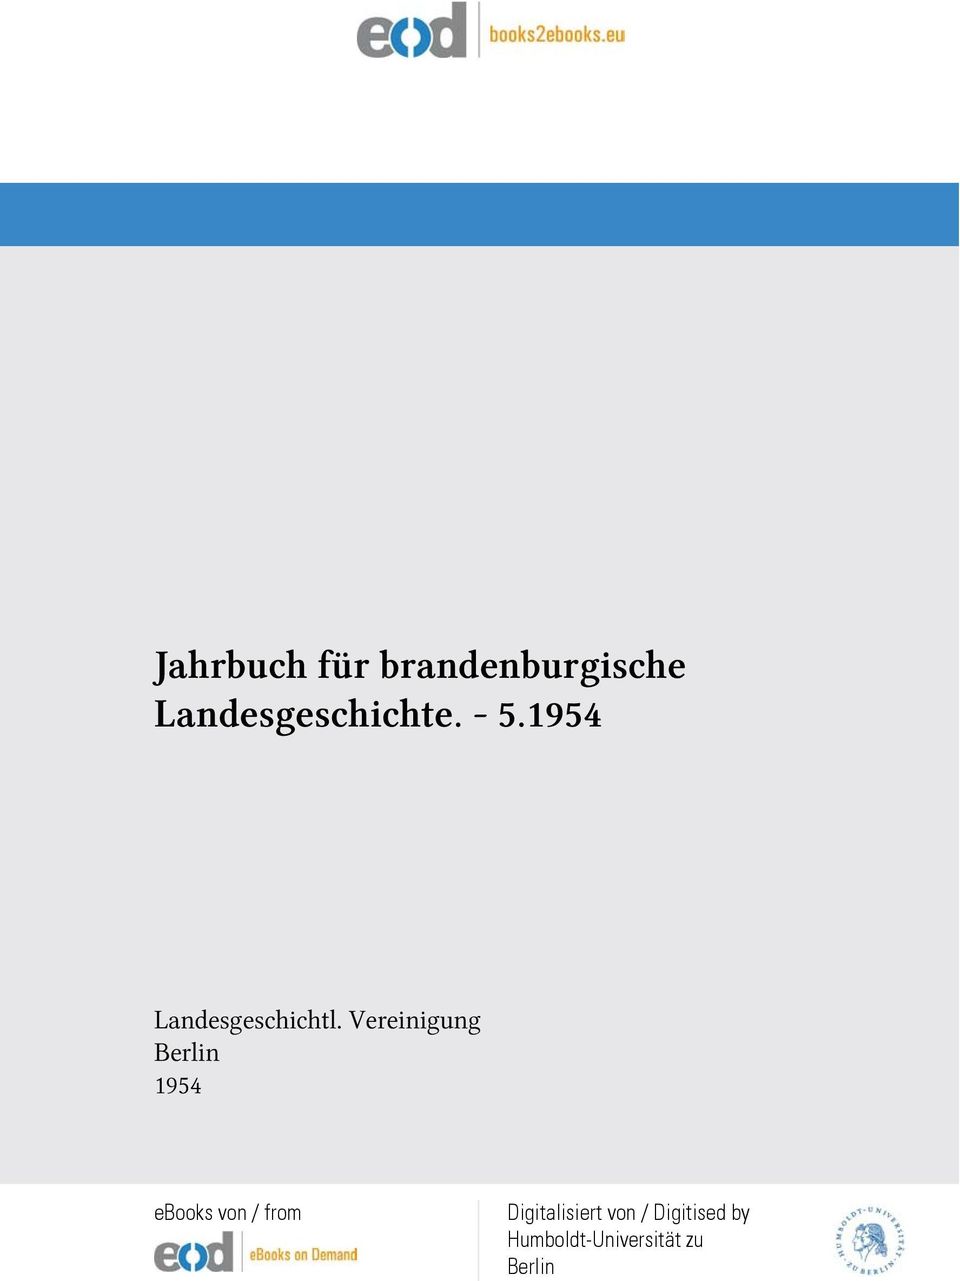 Vereinigung Berlin 1954 ebooks von / from